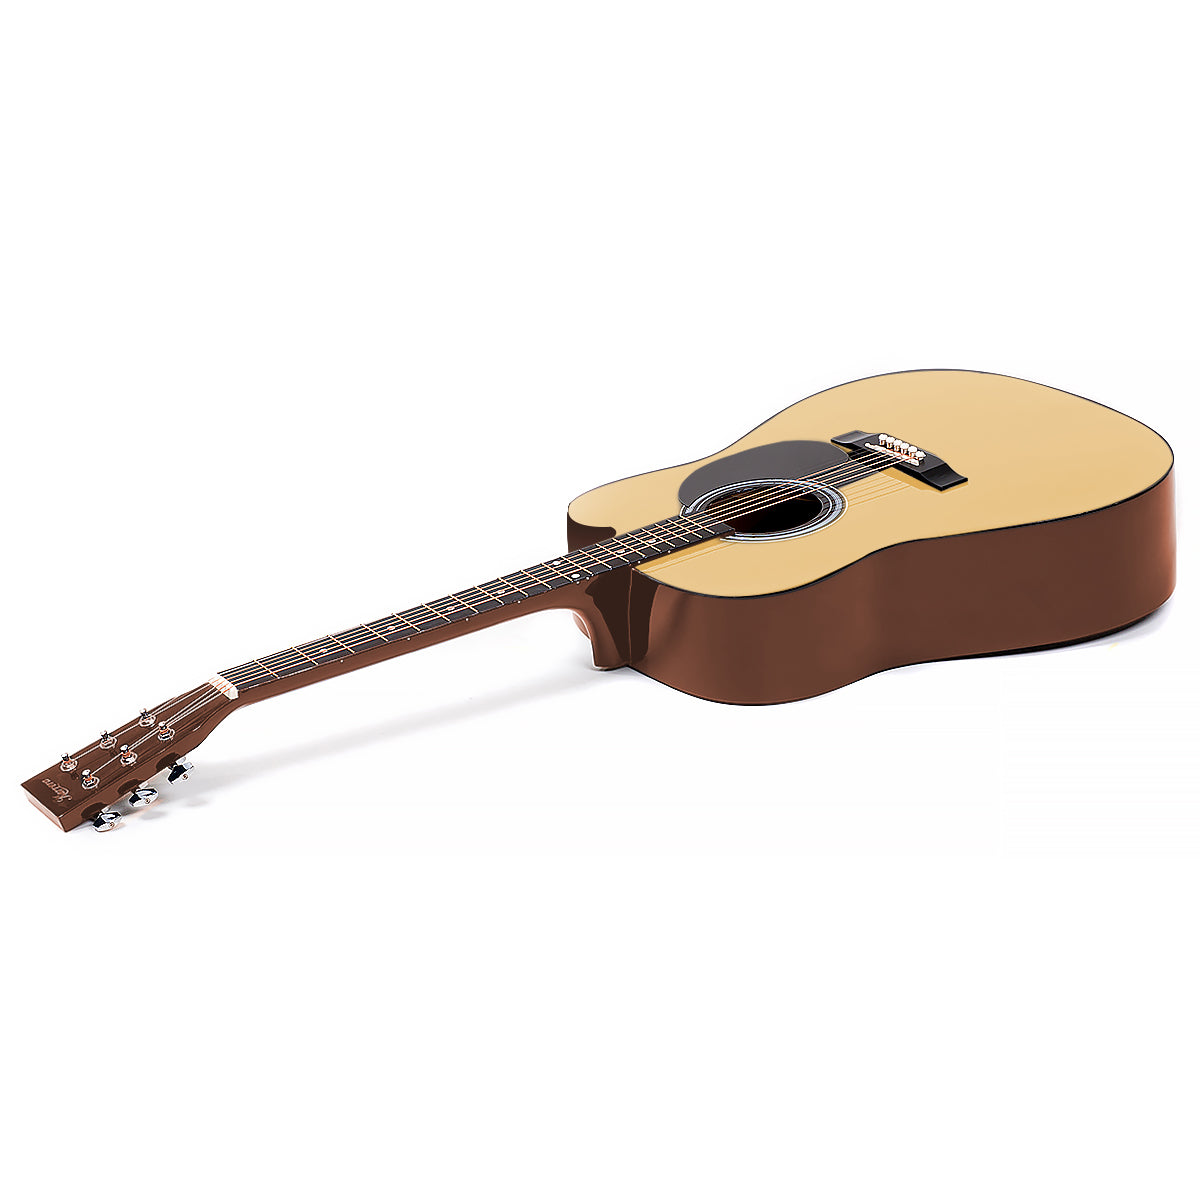 Karrera 38in Cutaway Acoustic Guitar with guitar bag - Natural - SILBERSHELL